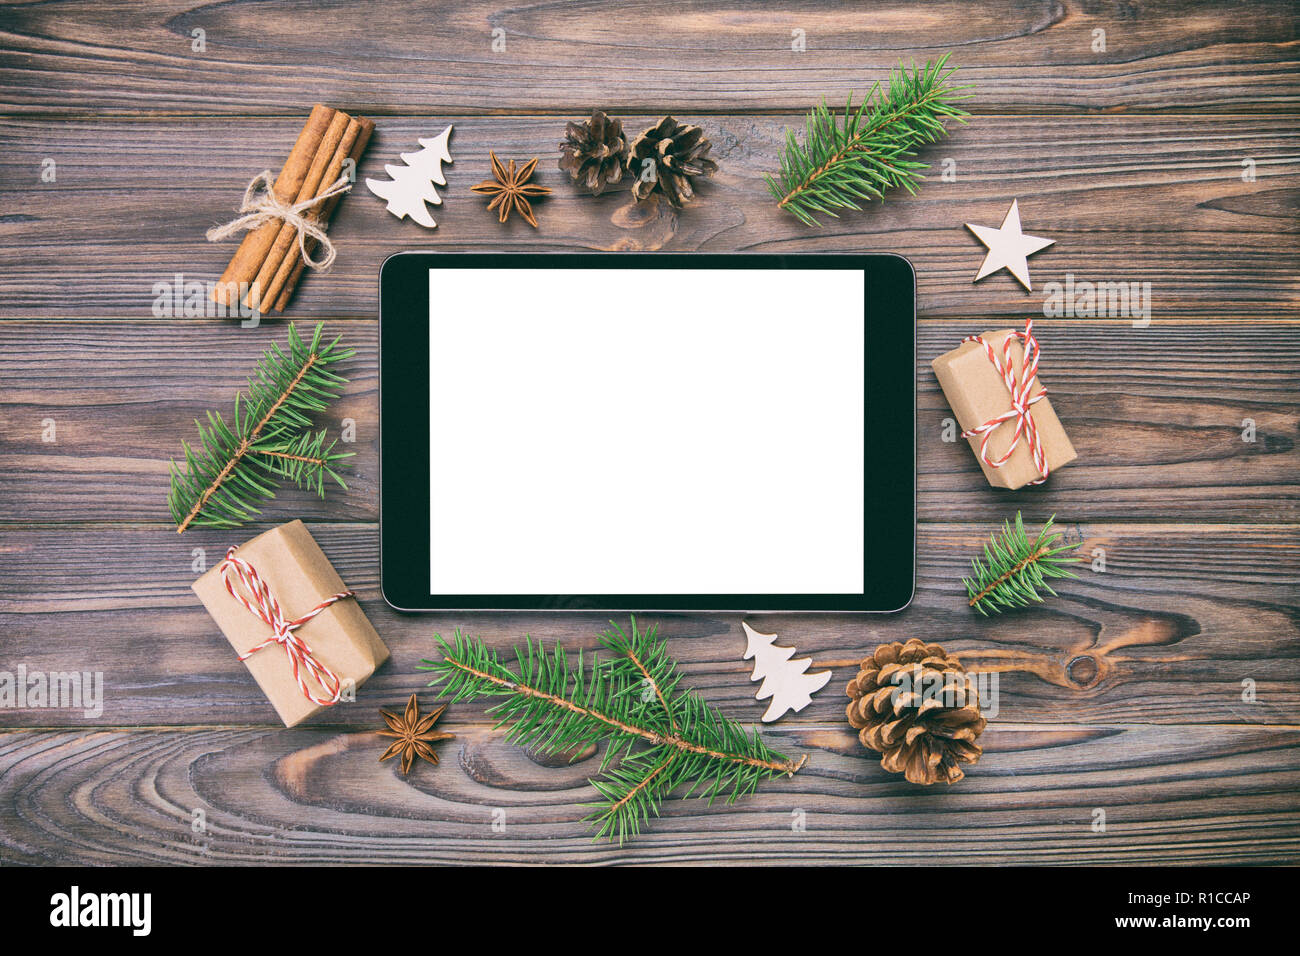 Một mẫu Rustic Christmas Tablet Mockup rất tuyệt vời đang chờ đợi bạn. Hãy cùng xem ảnh để cảm nhận được sự tươi vui và ấm áp của mùa lễ hội. Bạn sẽ thấy rằng, chiếc máy tính bảng sẽ là món quà hoàn hảo trong dịp này.